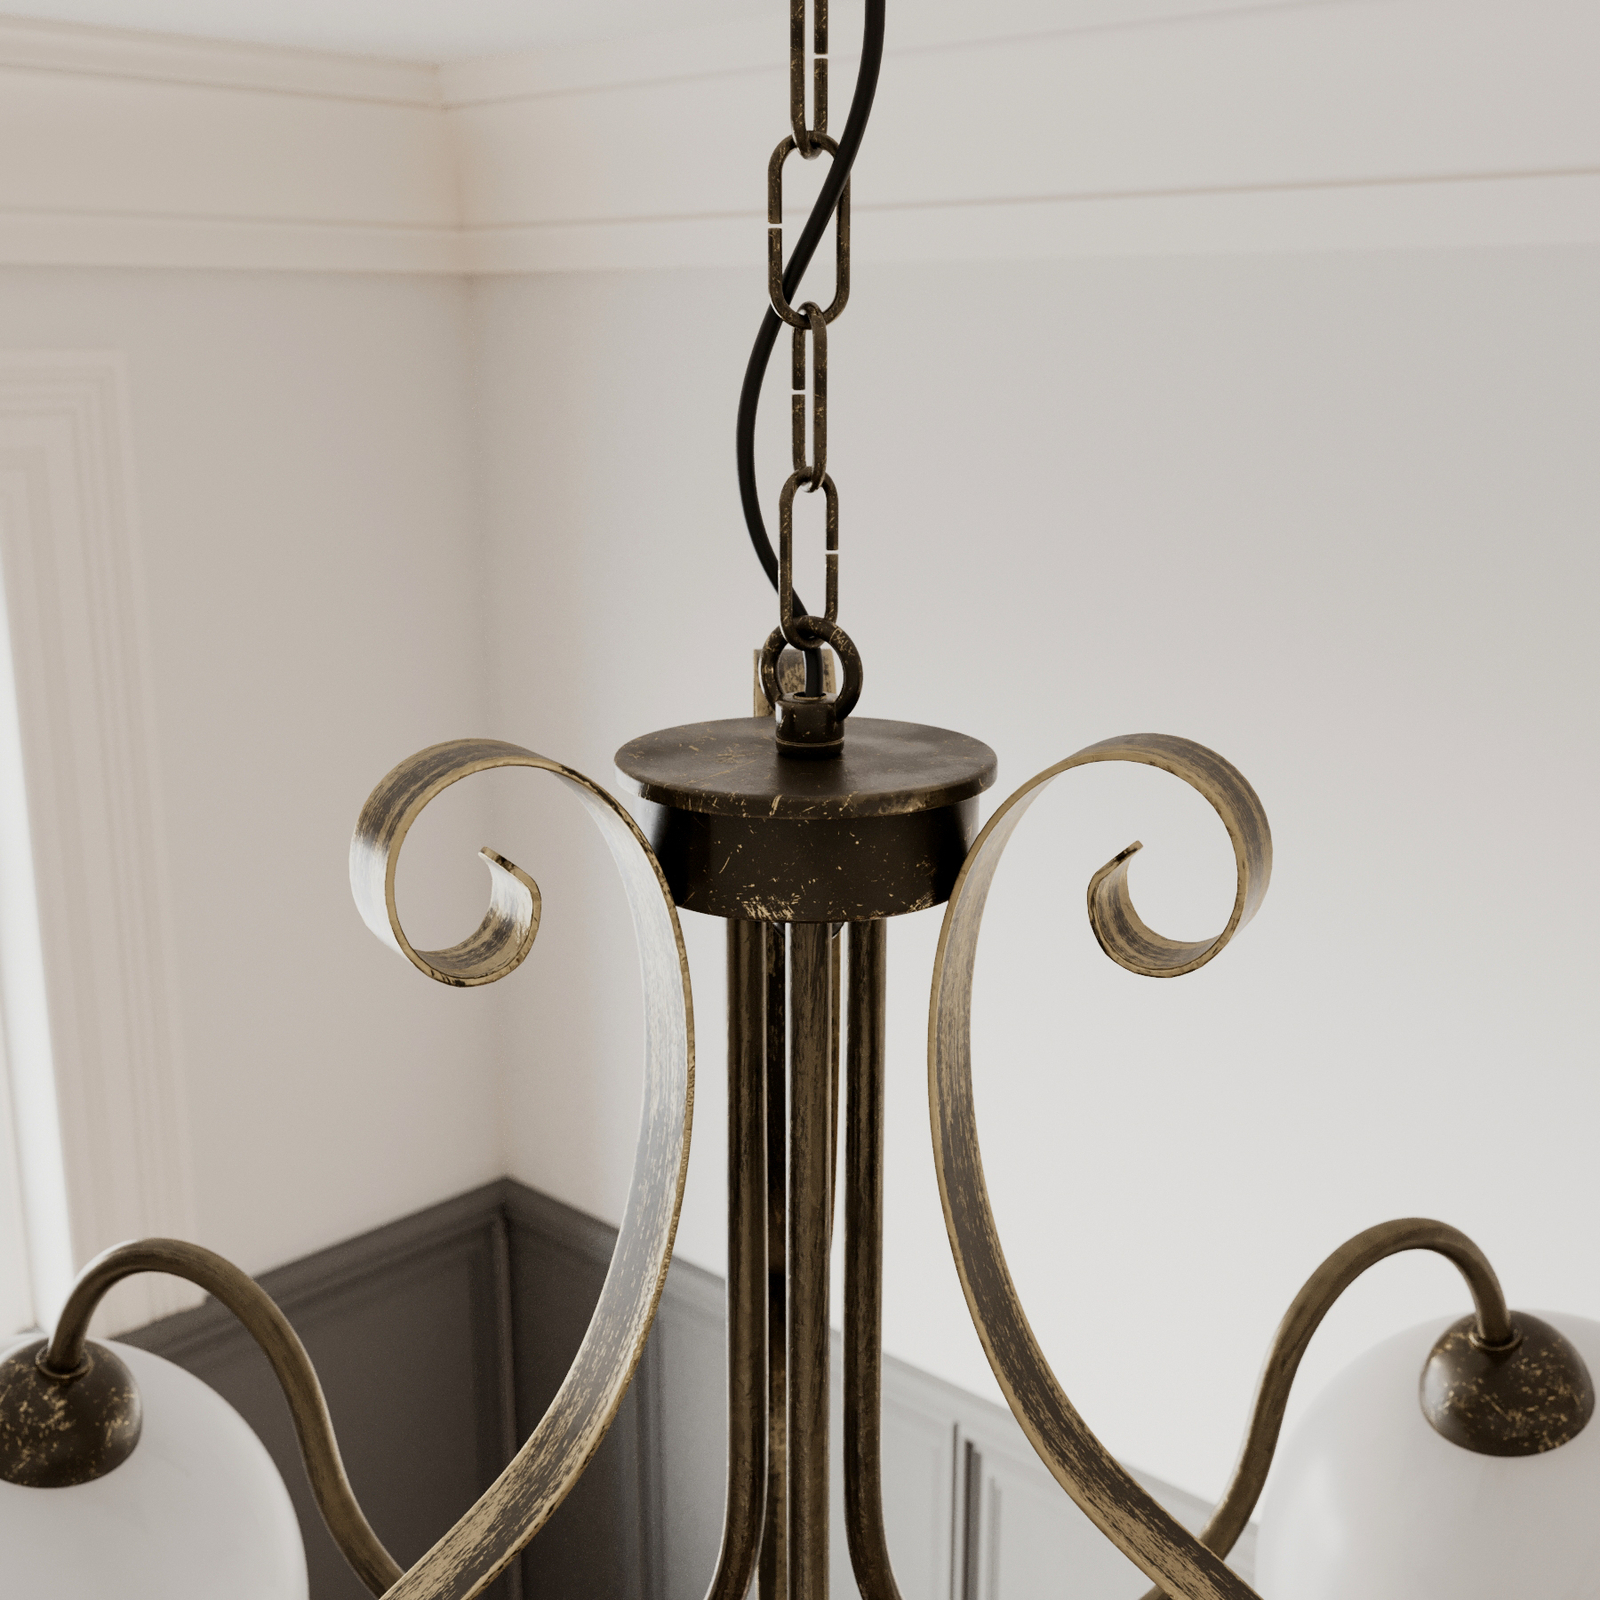 Suspension Antica de style rustique à 3 lampes